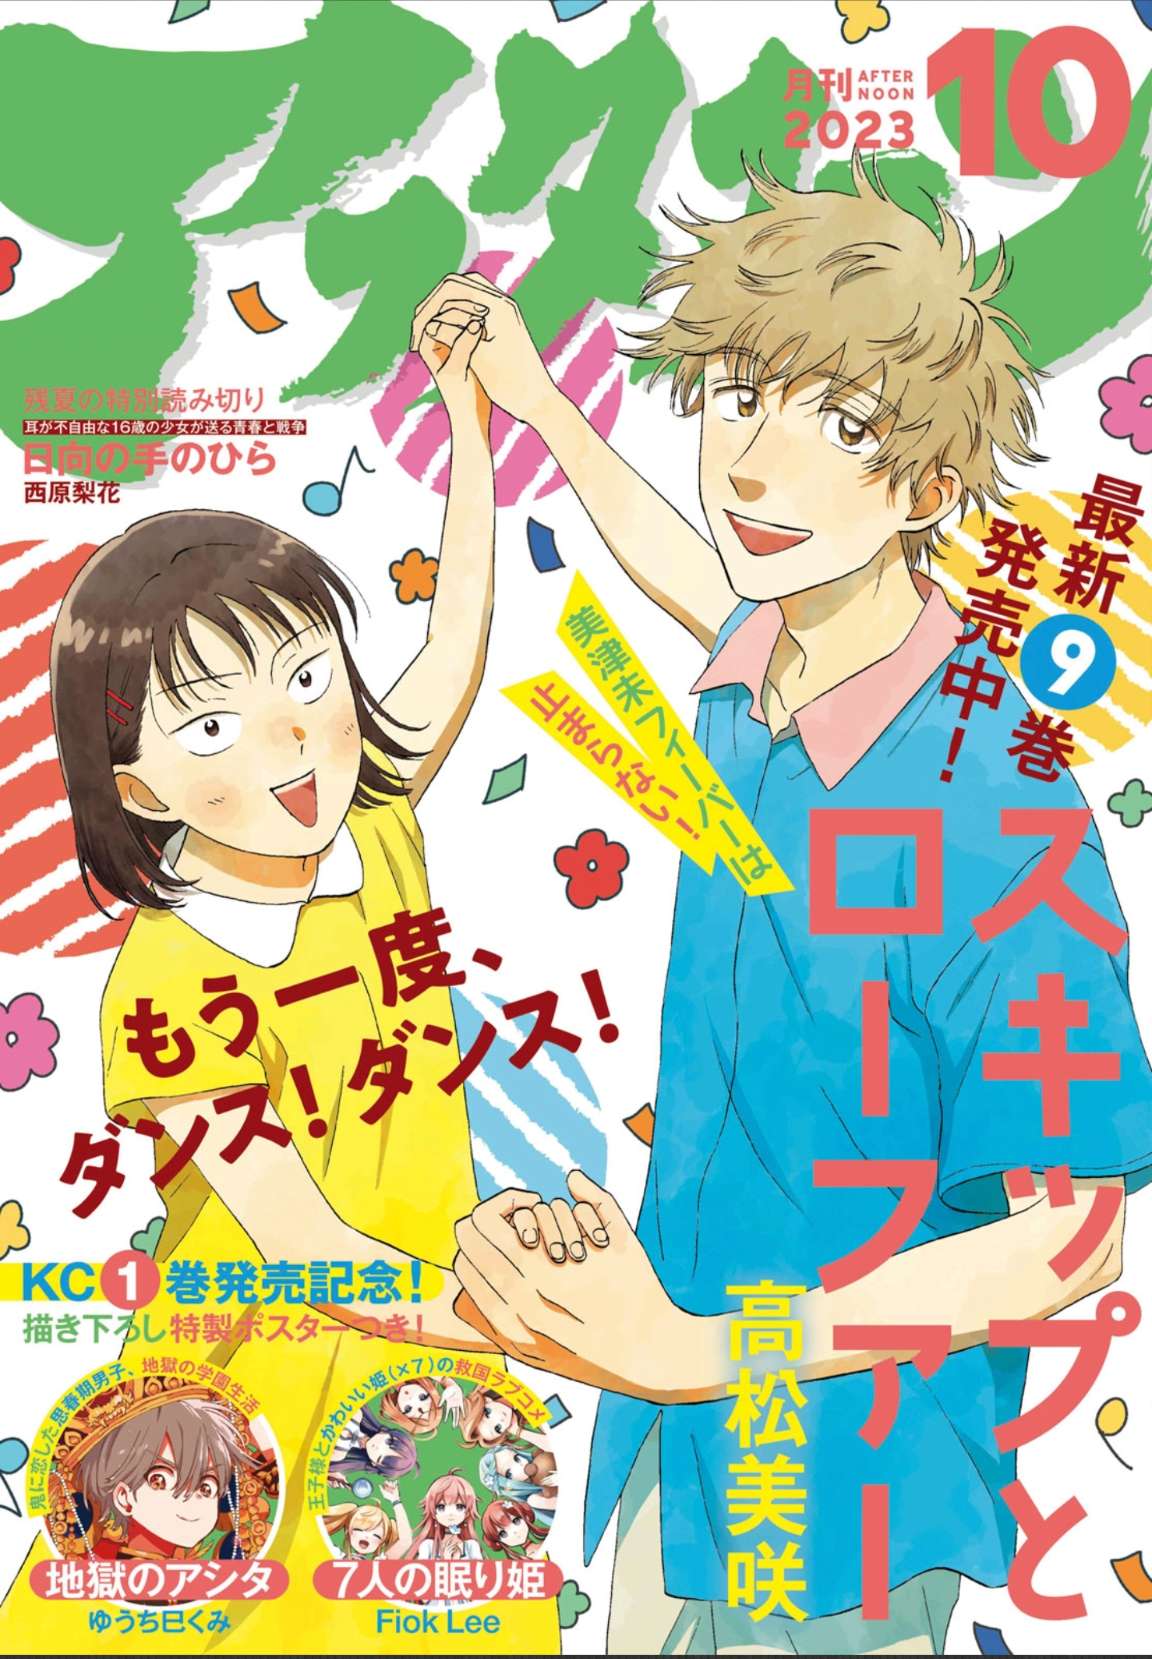 Skip and Loafer Manga Volume 5